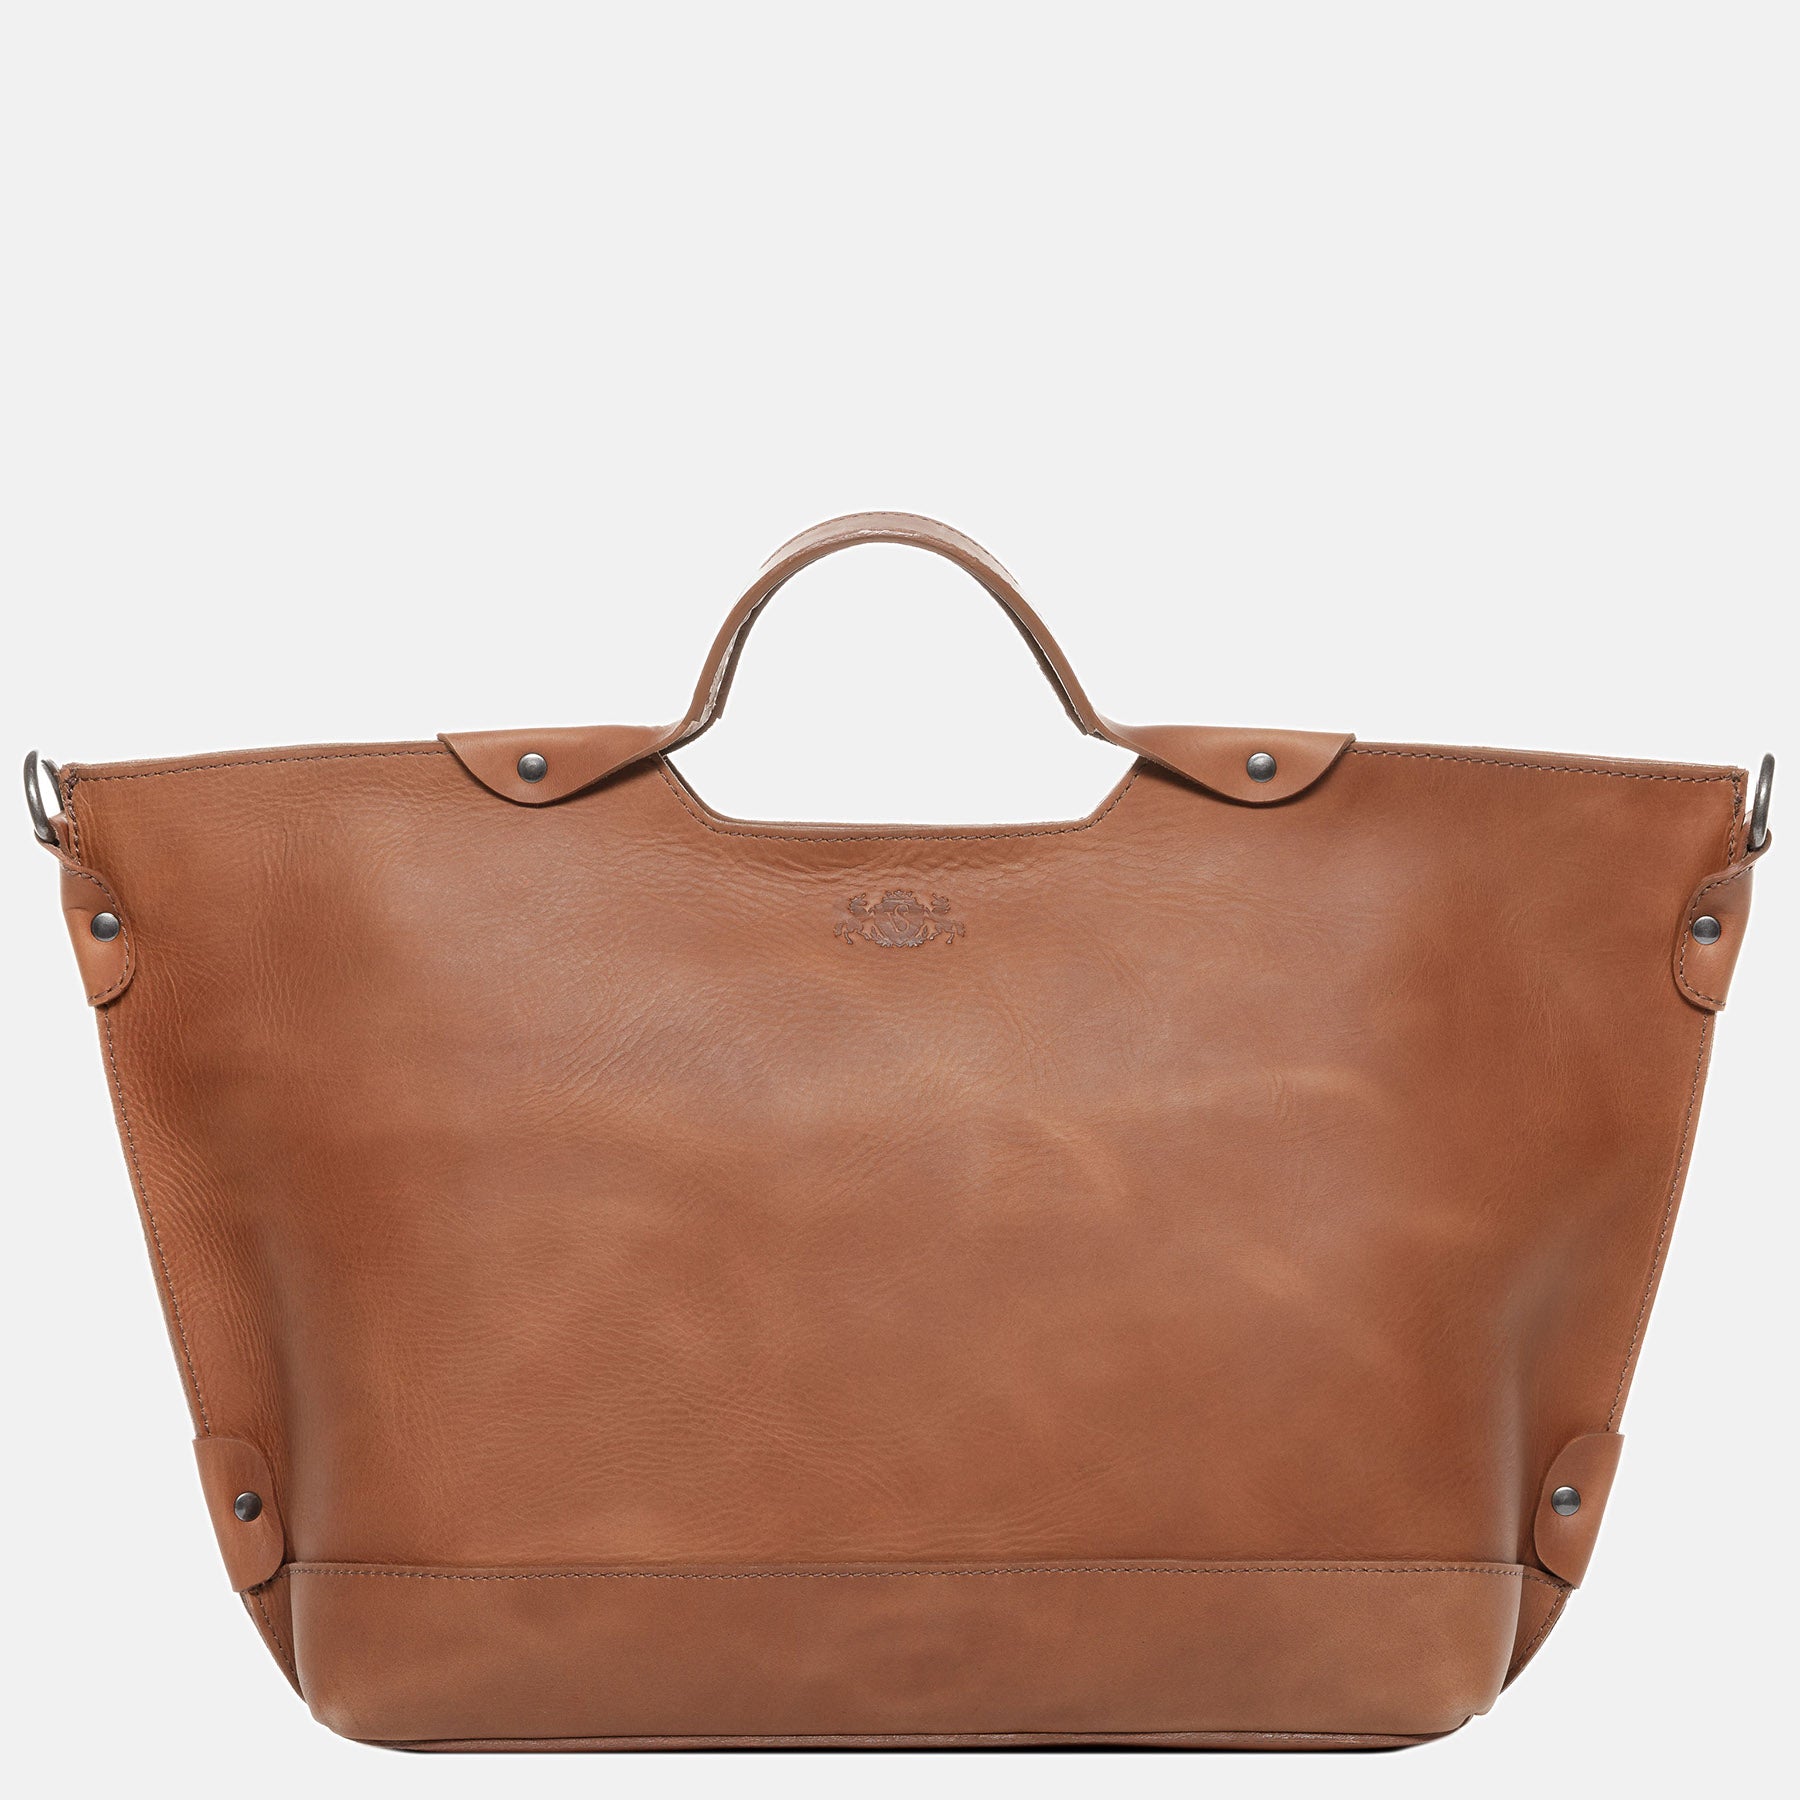 Handbag DEBBY smooth leather brown